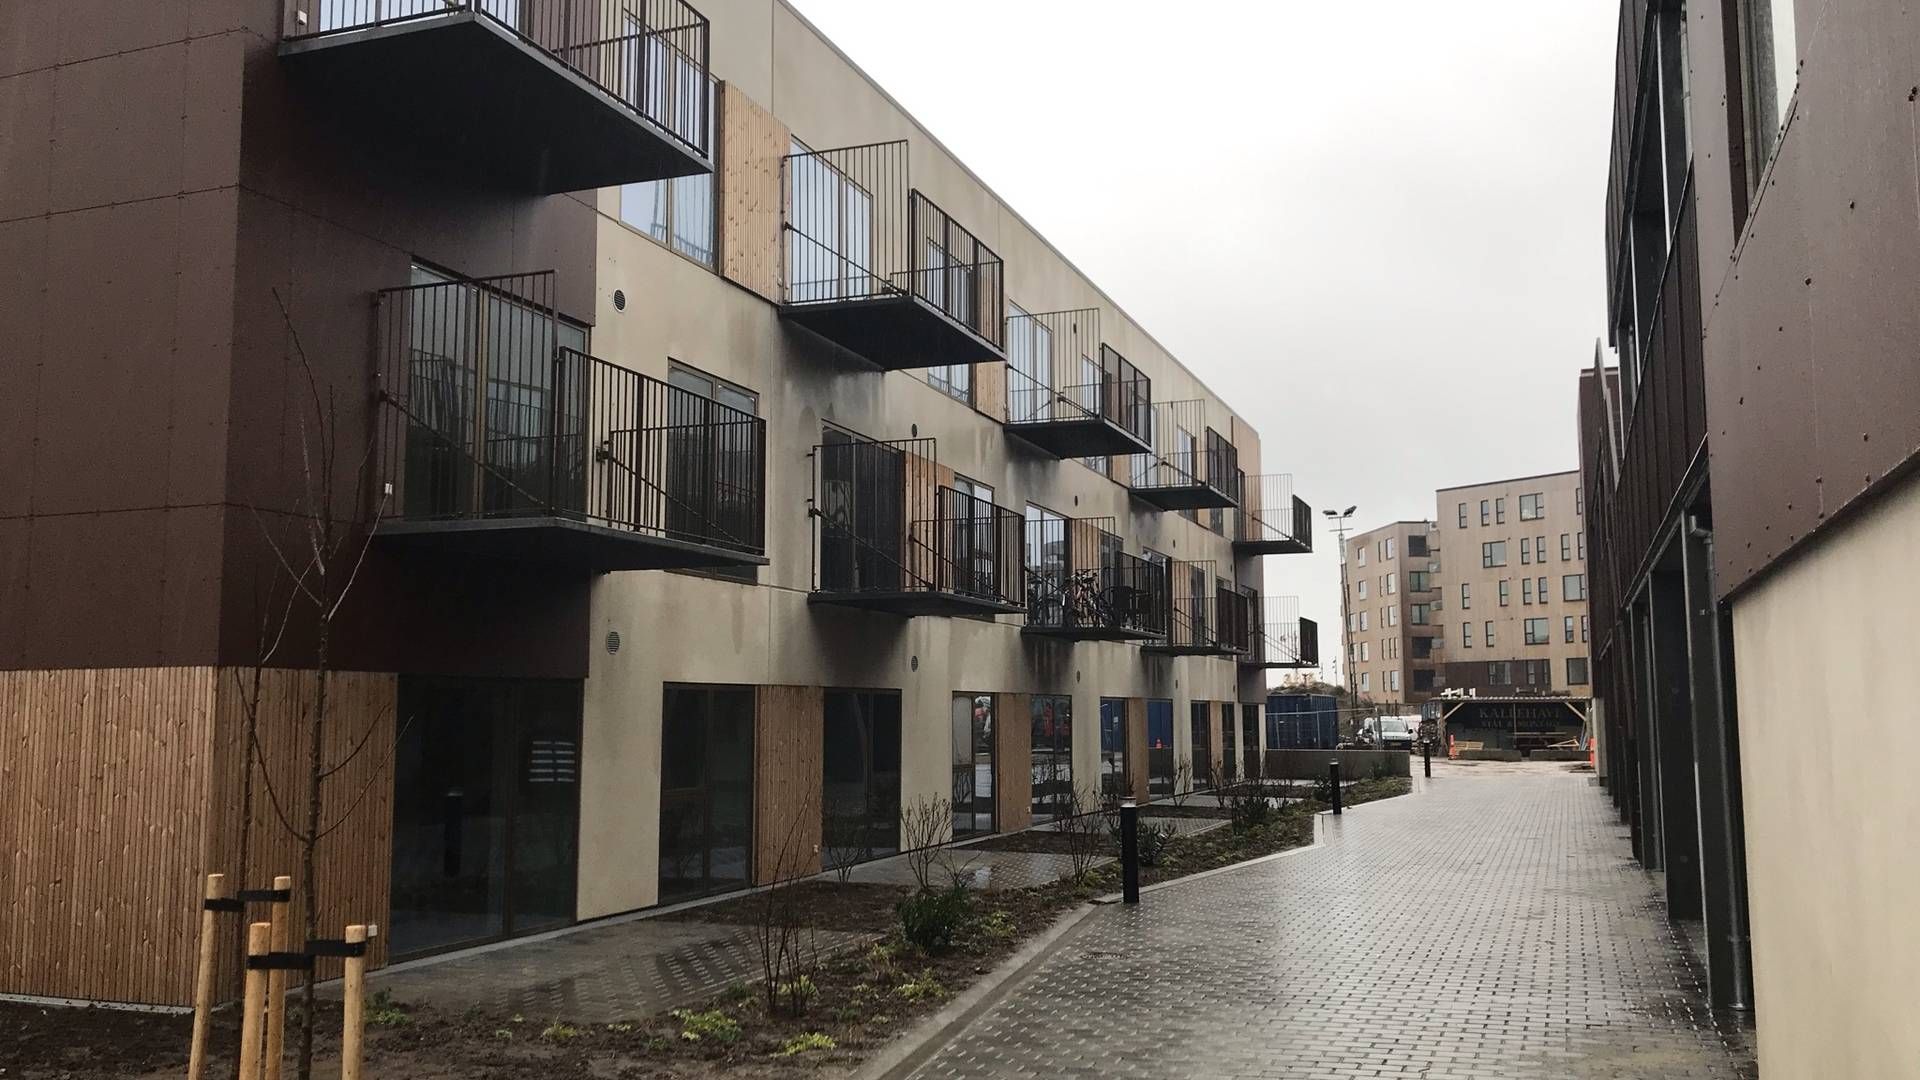 De første 15 boliger i Bådhusene er færdigbyggede, mens de resterende 57 boliger færdiggøres i etaper i det kommende år. | Foto: PR / A. Enggaard